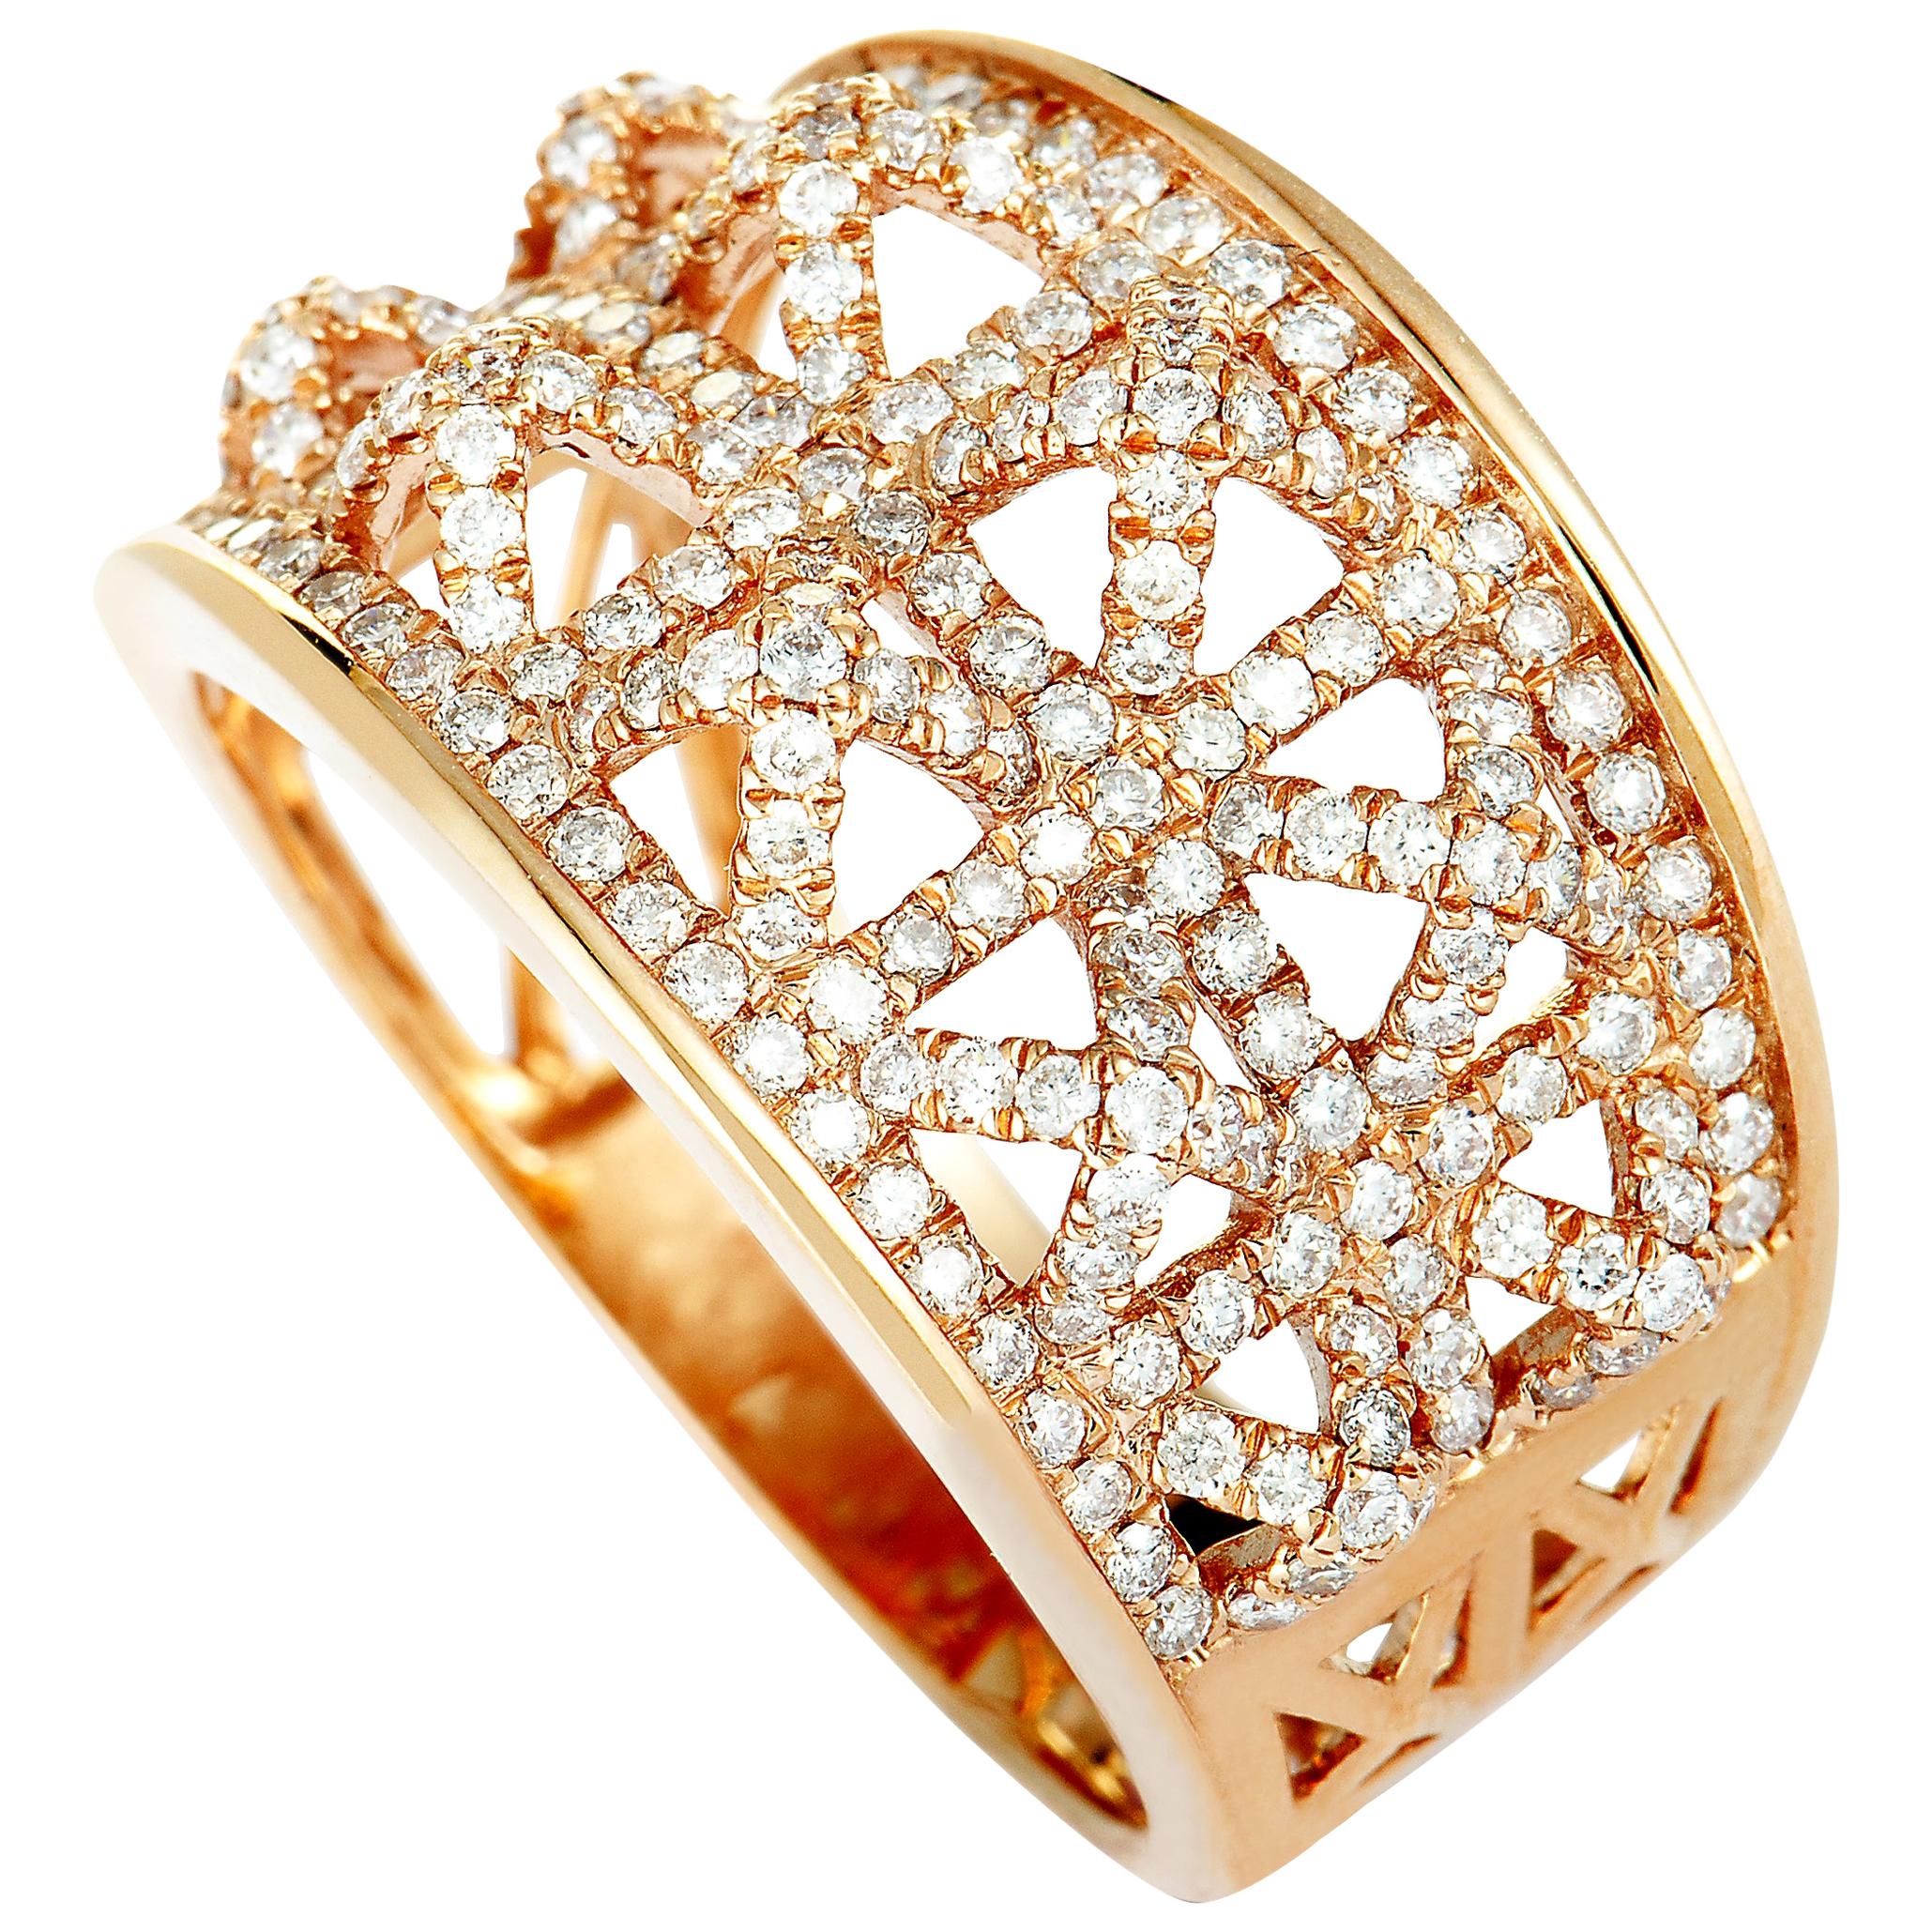 LB Exclusive 18 Karat Rose Gold Diamond Pave Band Ring